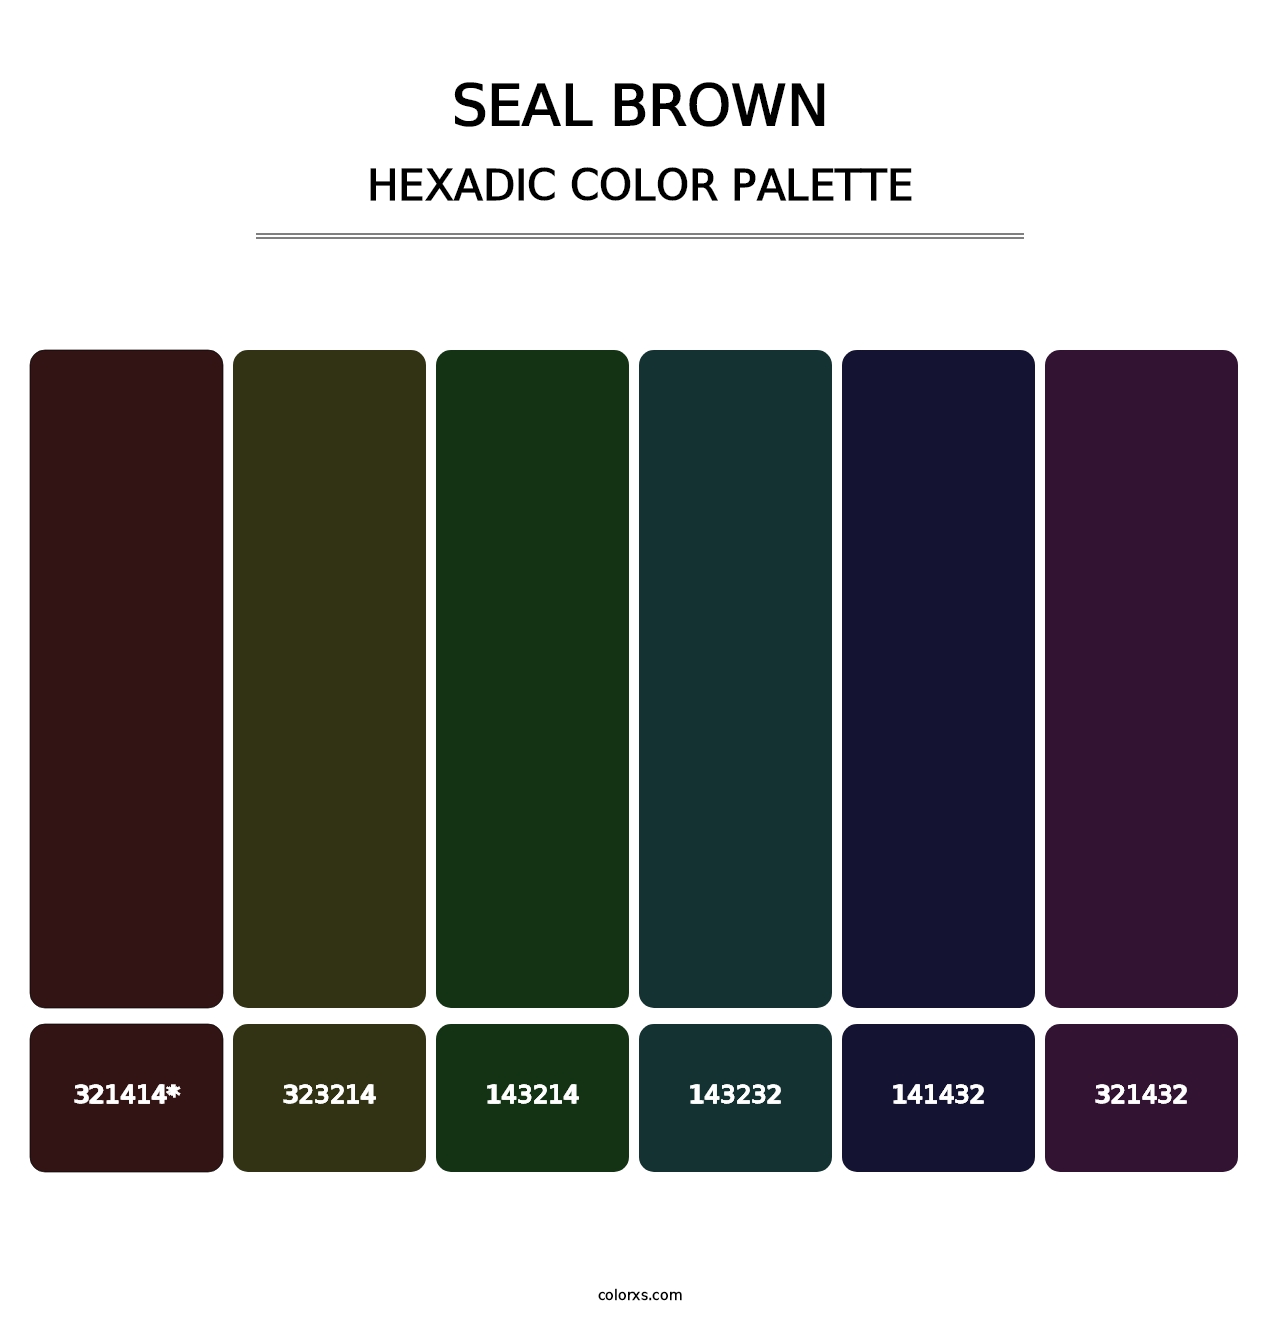 Seal brown - Hexadic Color Palette